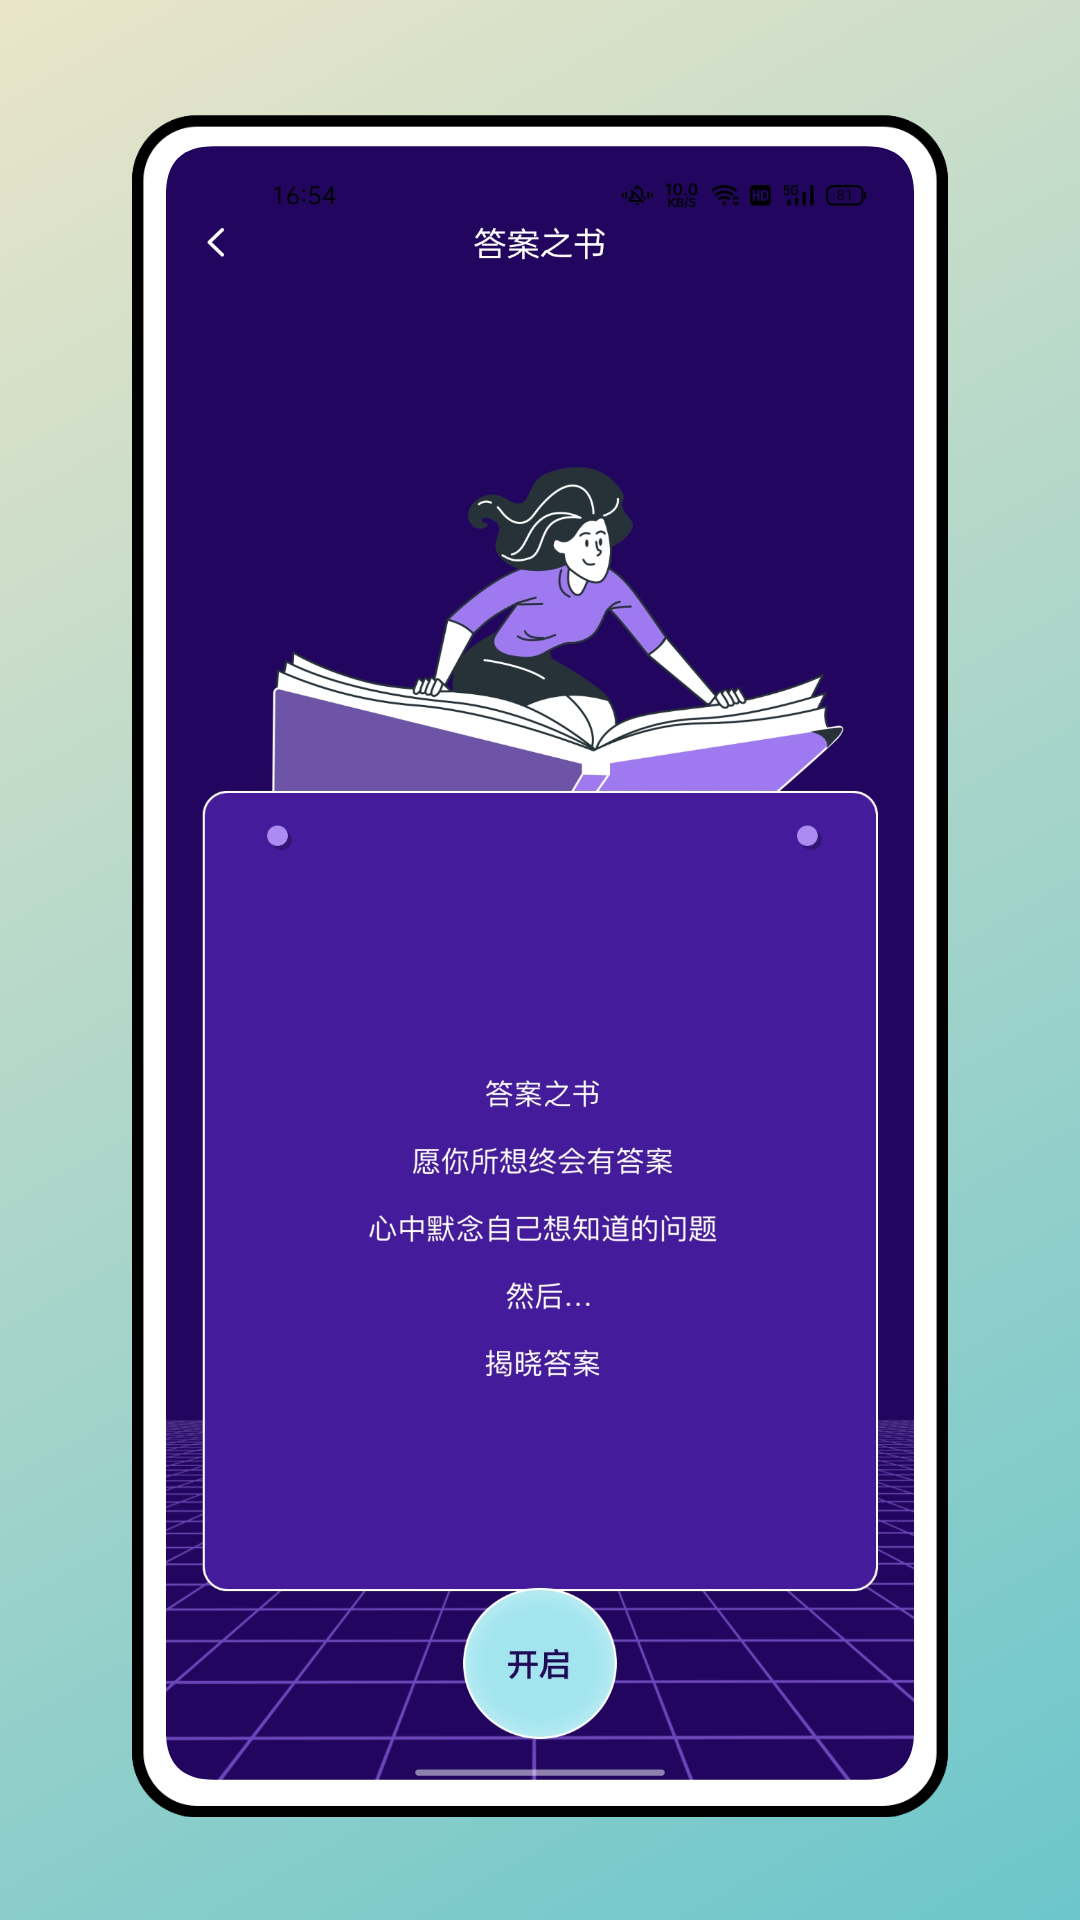 长江雨课堂app截图2